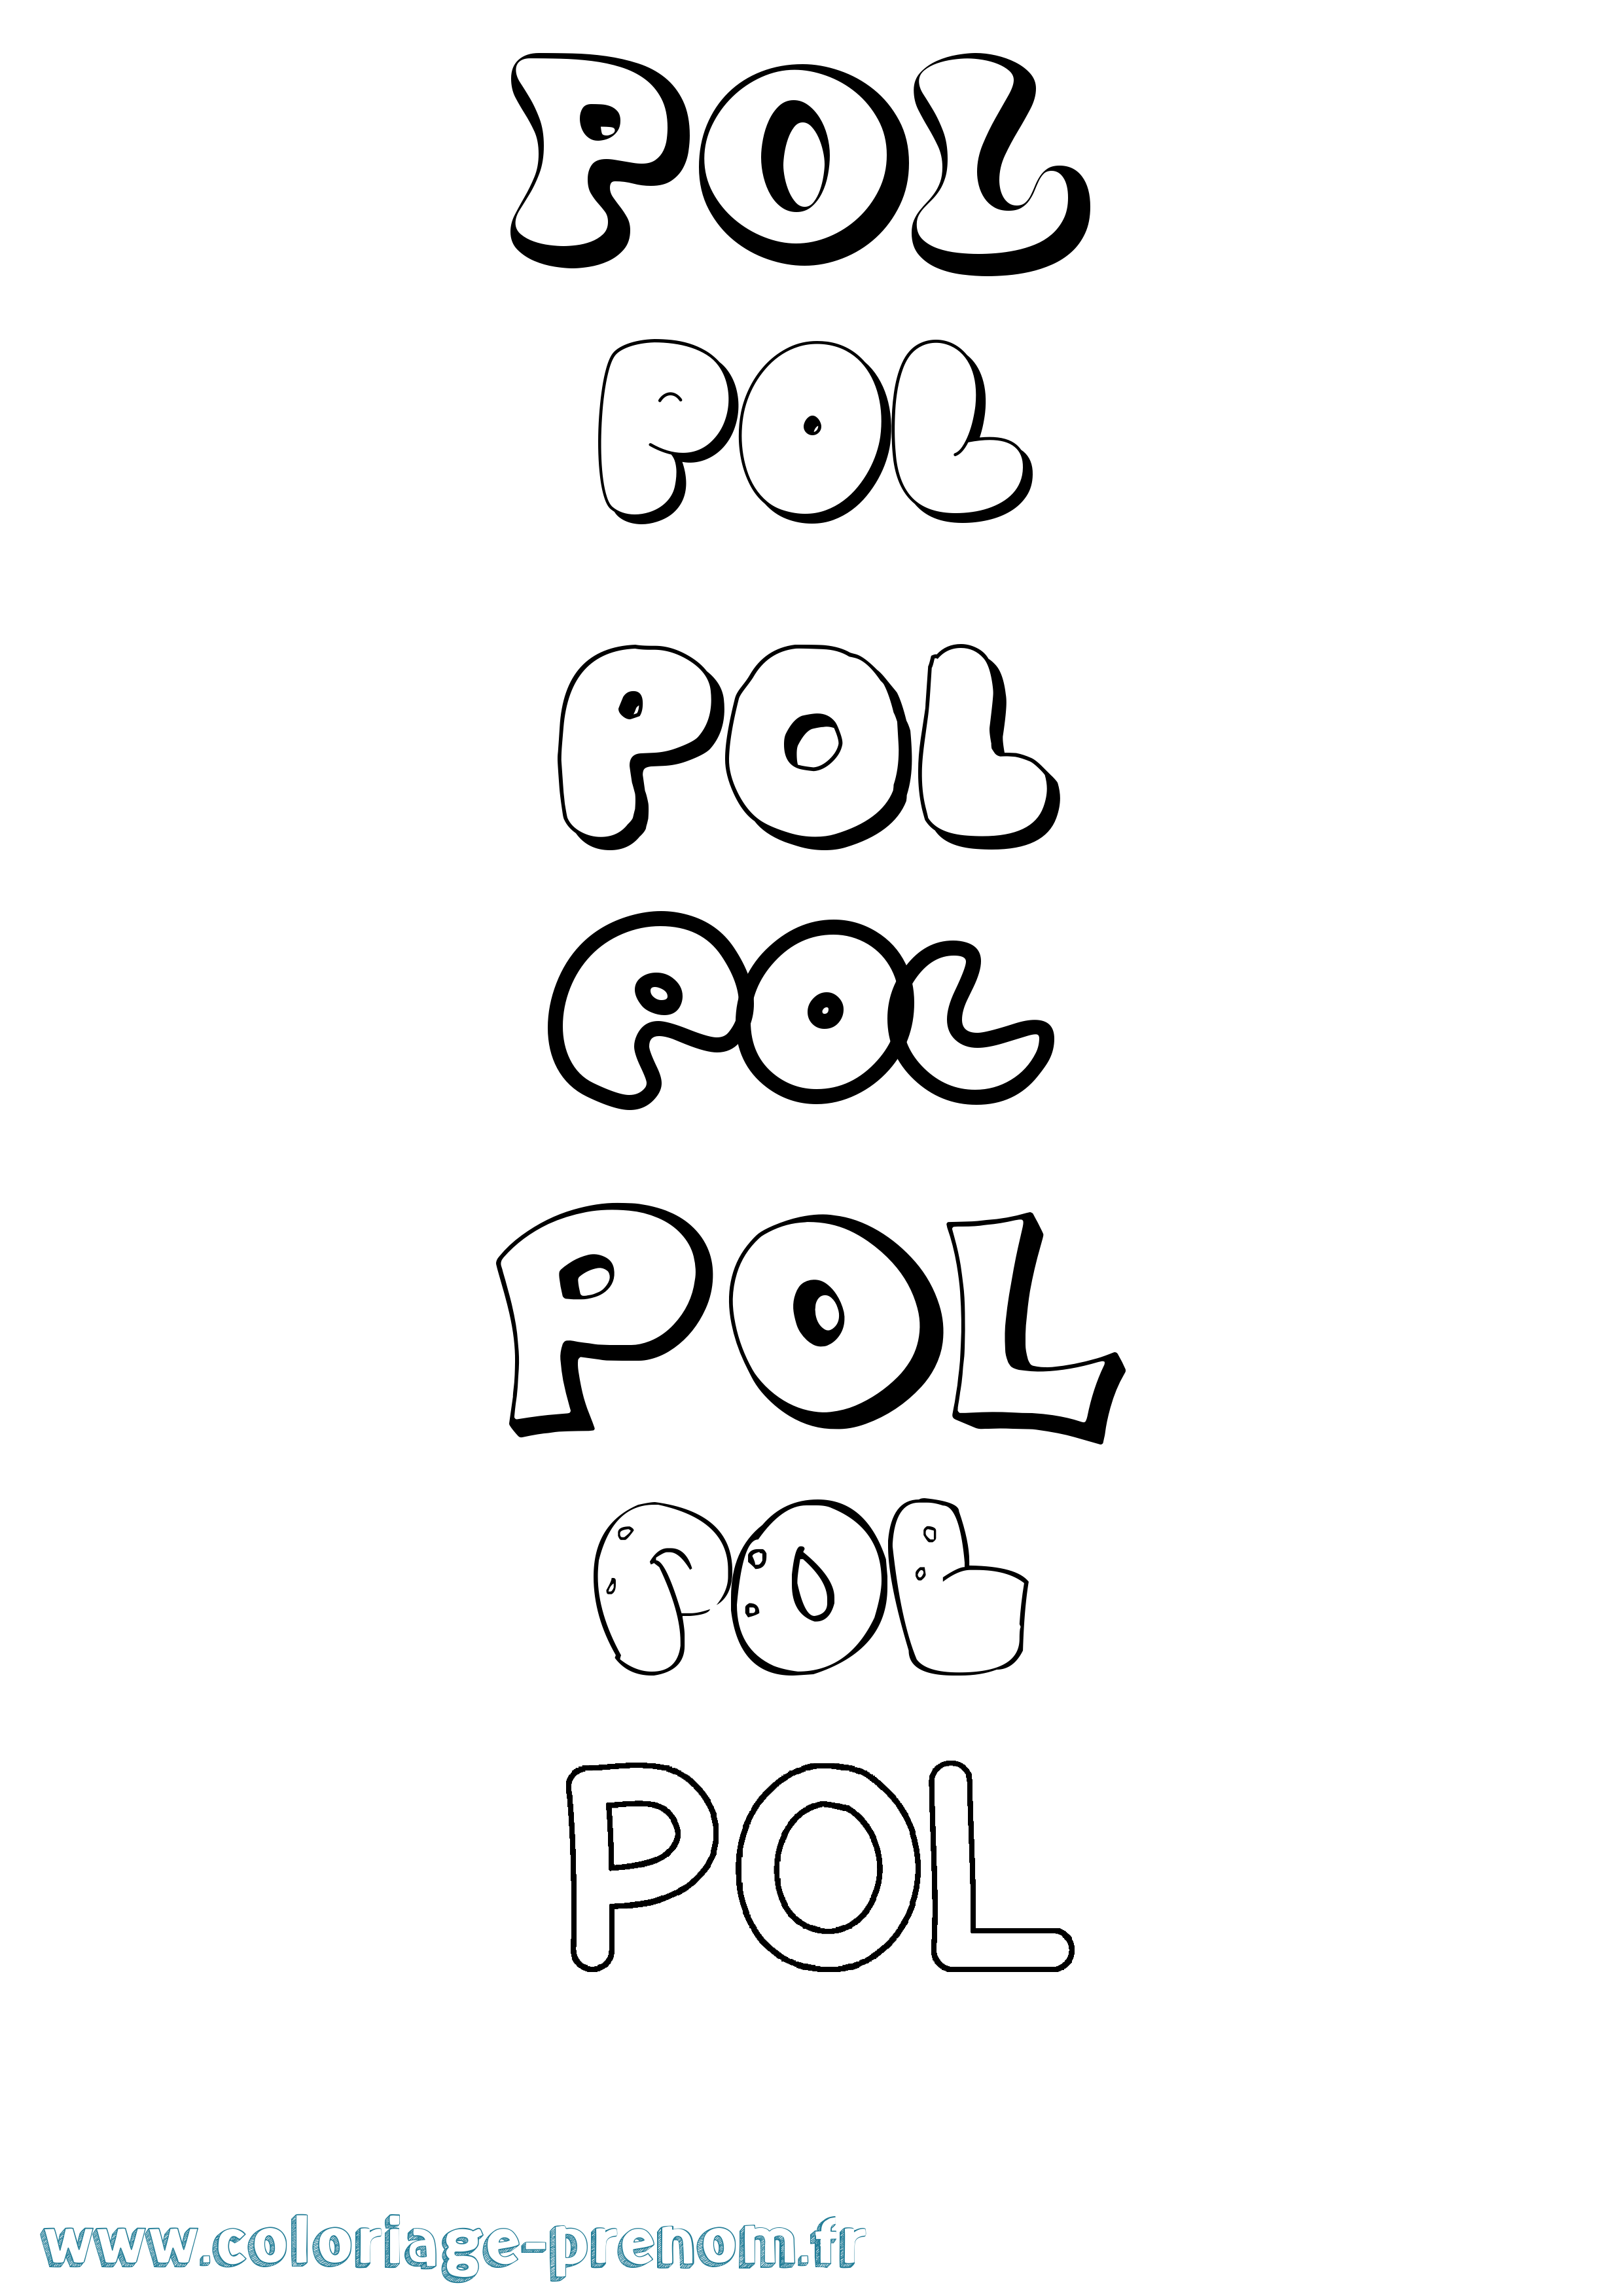 Coloriage prénom Pol Bubble